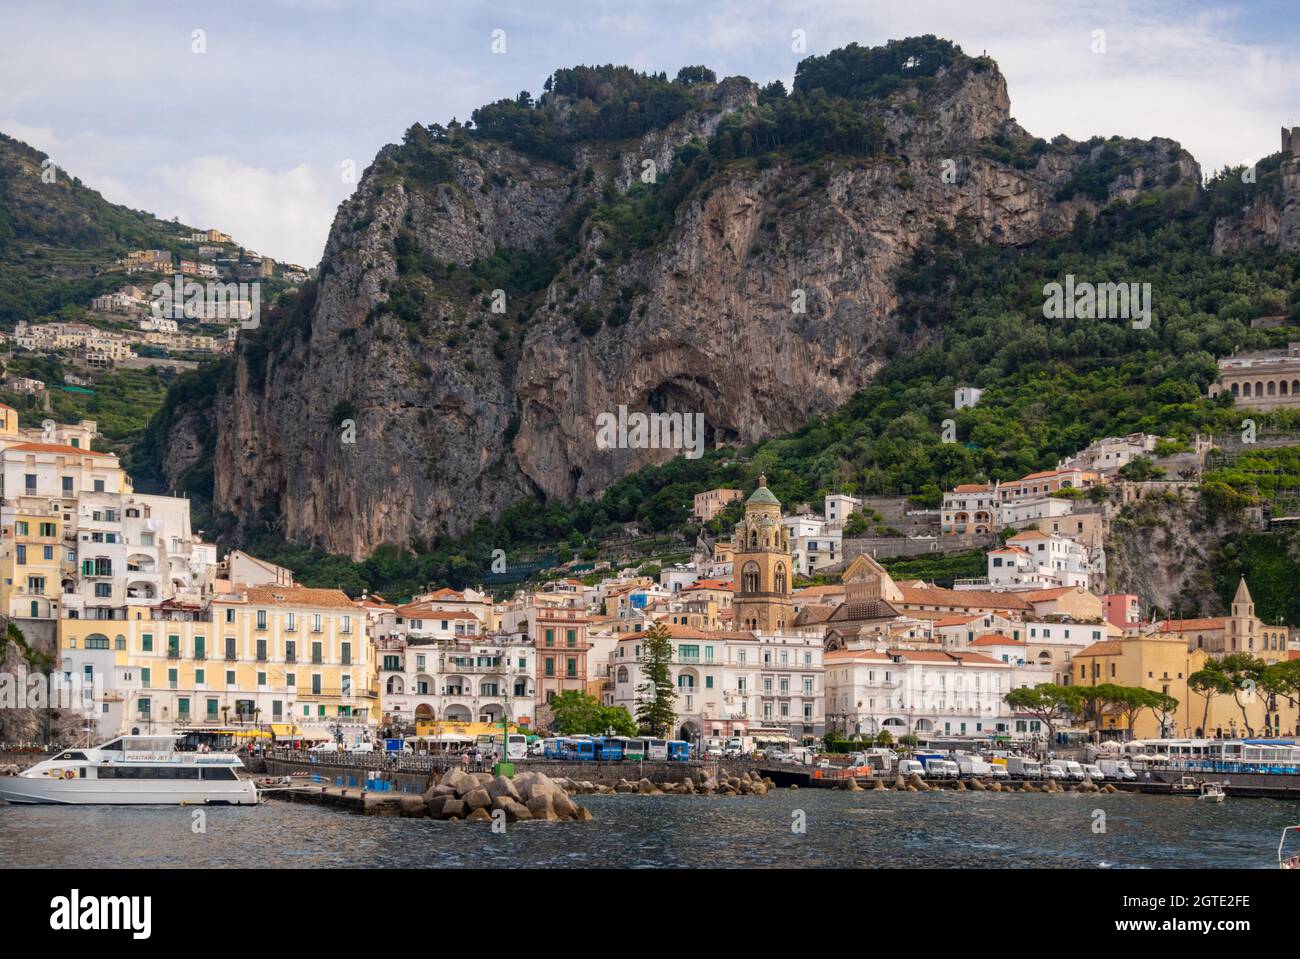 La ciudad de Amalfi vista desde la costa, Salerno, Campanis, Italia Foto de stock